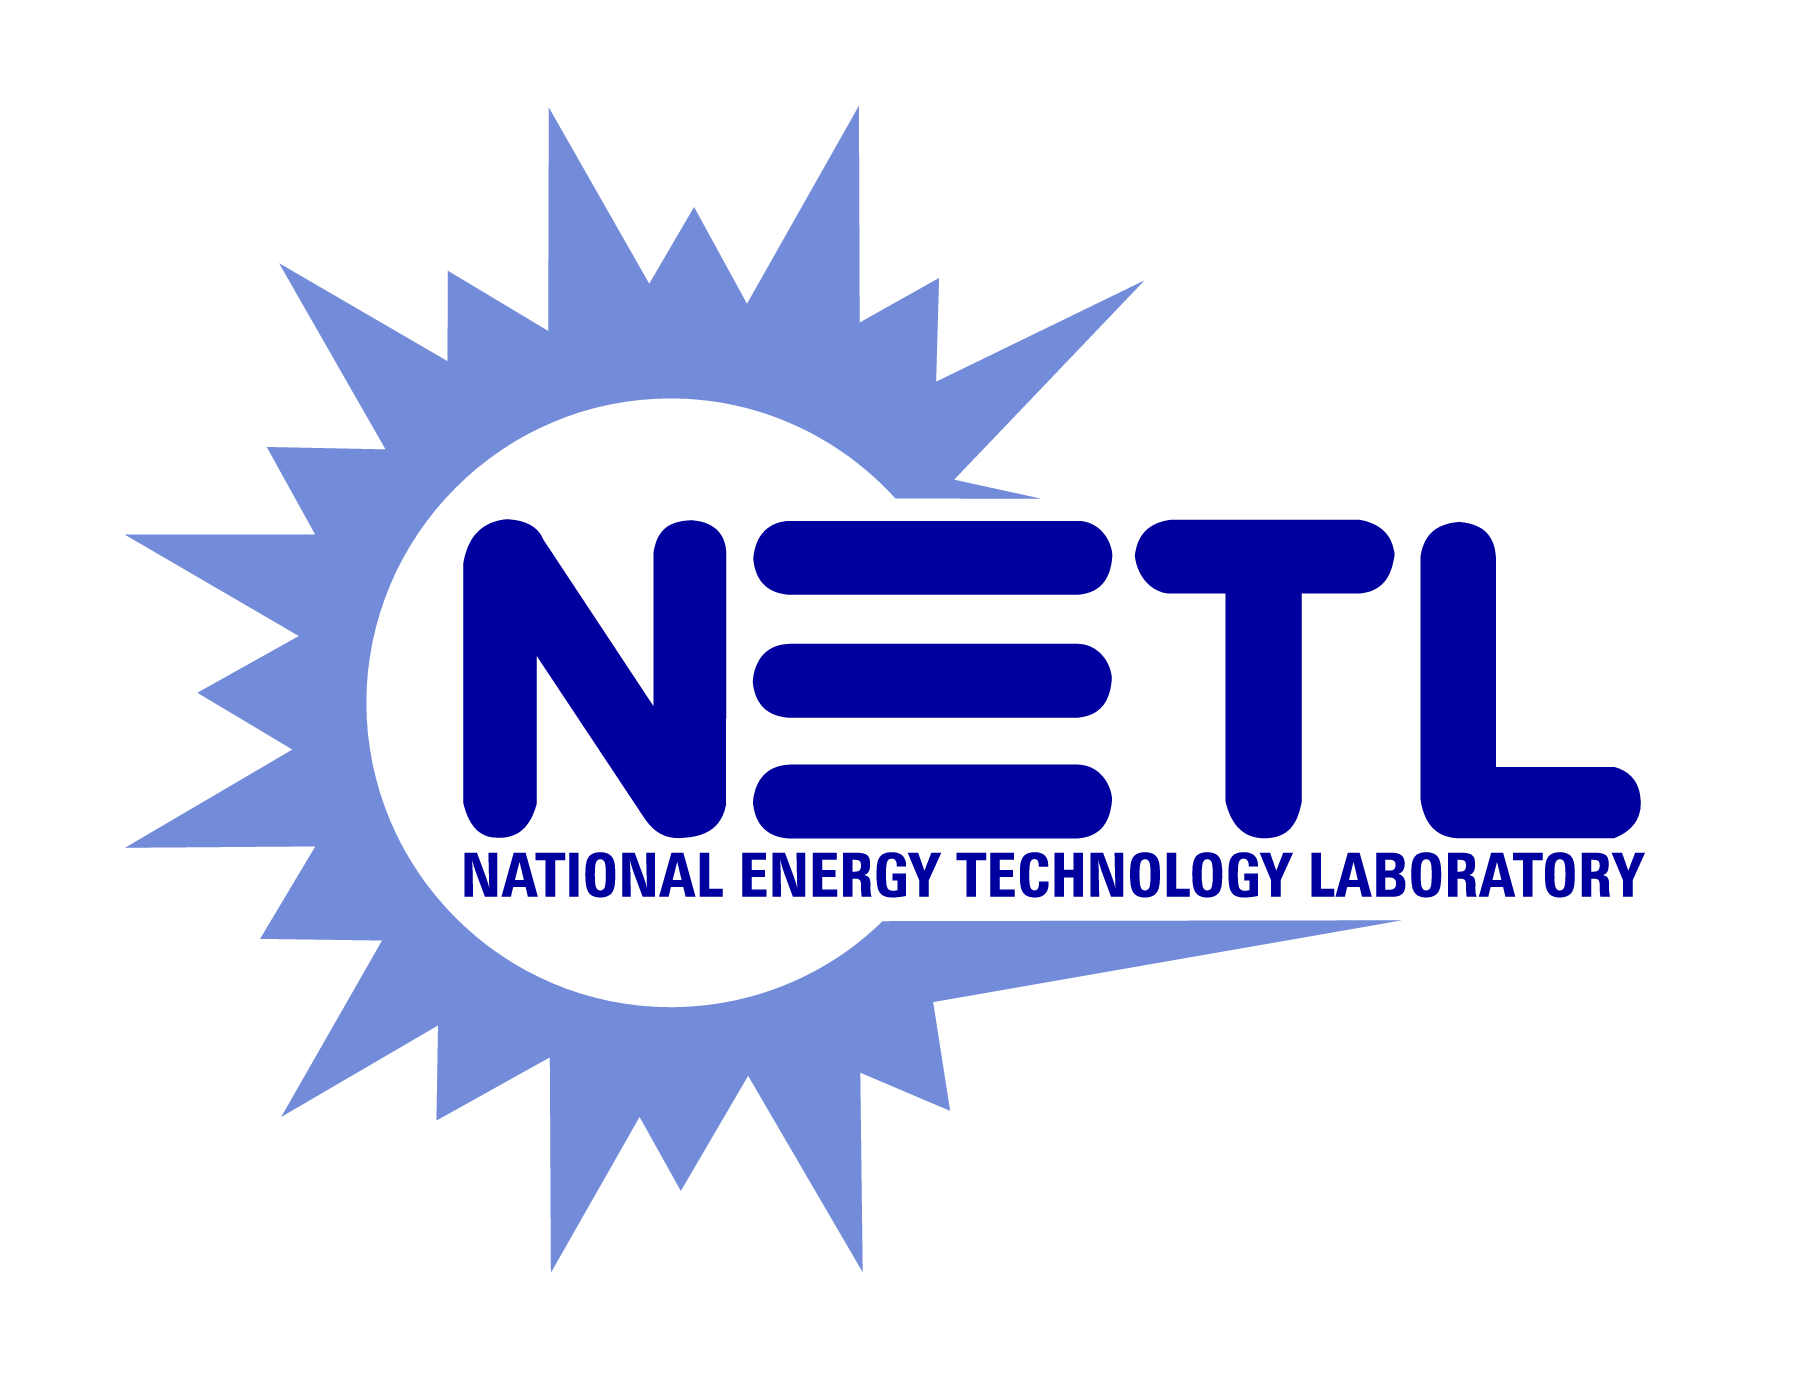 National Energy Technology Laboratory logo